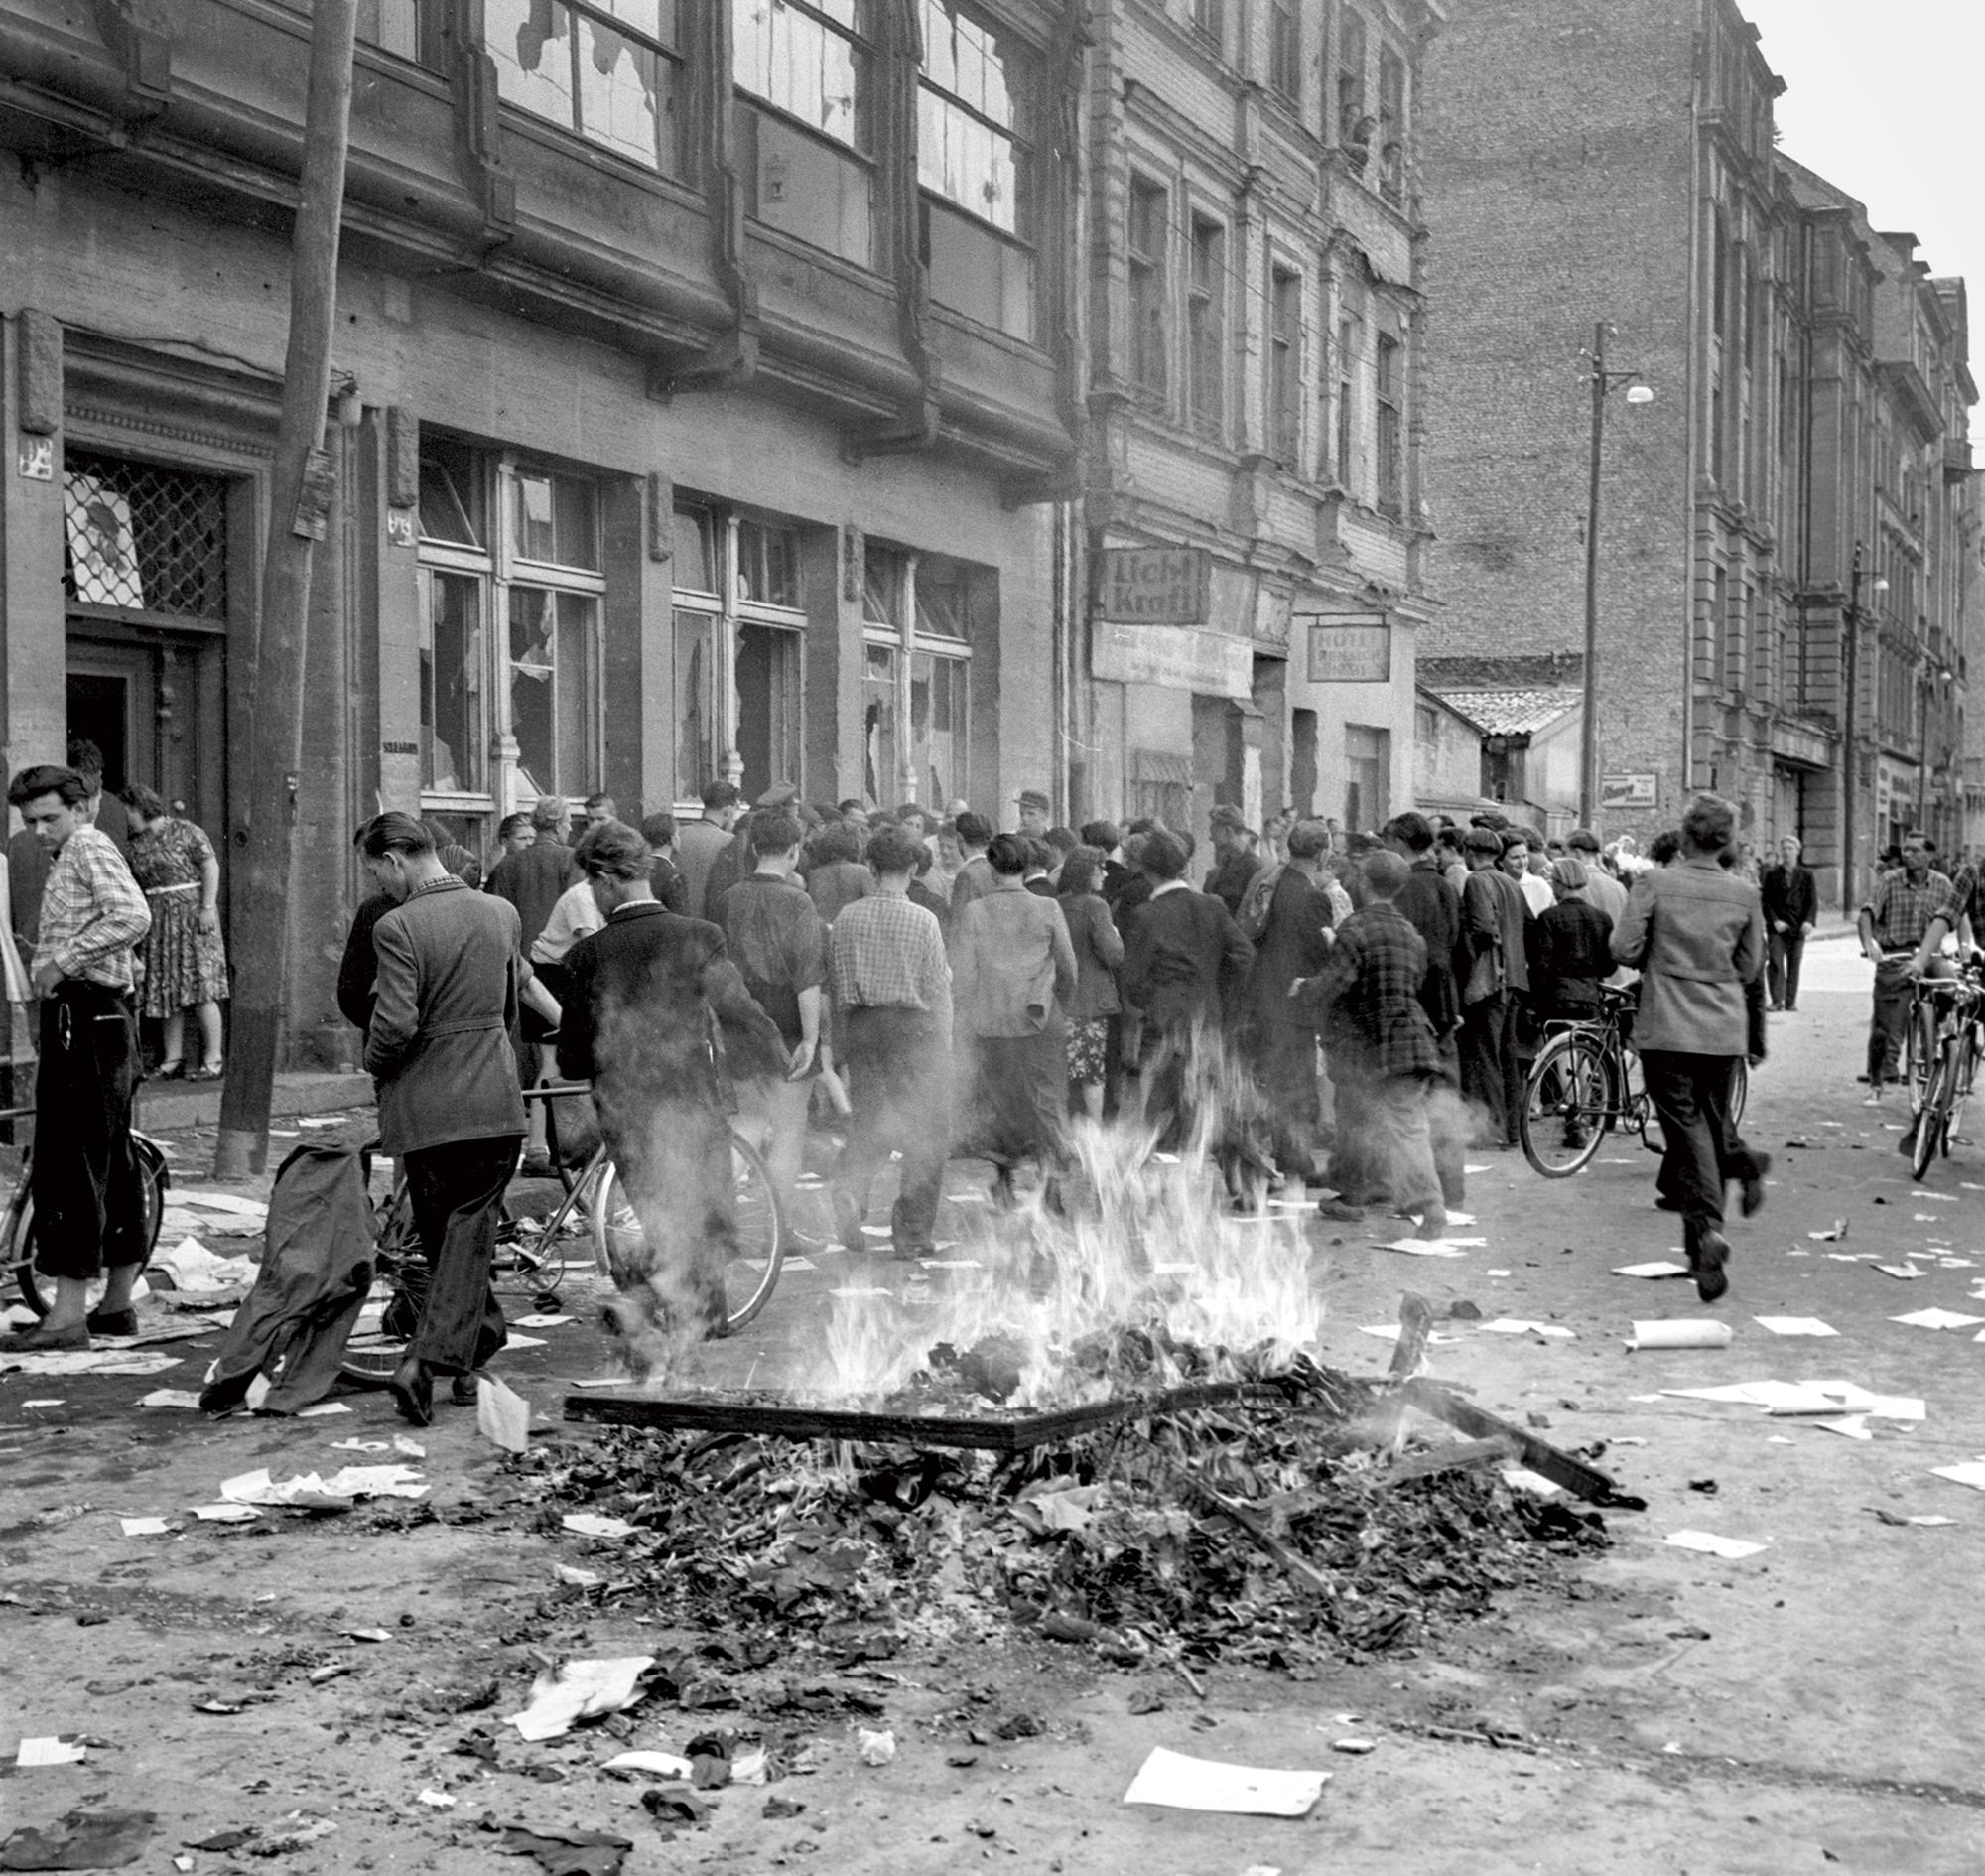 Nach vorangegangenen Streiks in Ost-Berliner Betrieben versammeln sich am 17. Juni 1953 Demonstrant:innen in den Straßen von Berlin